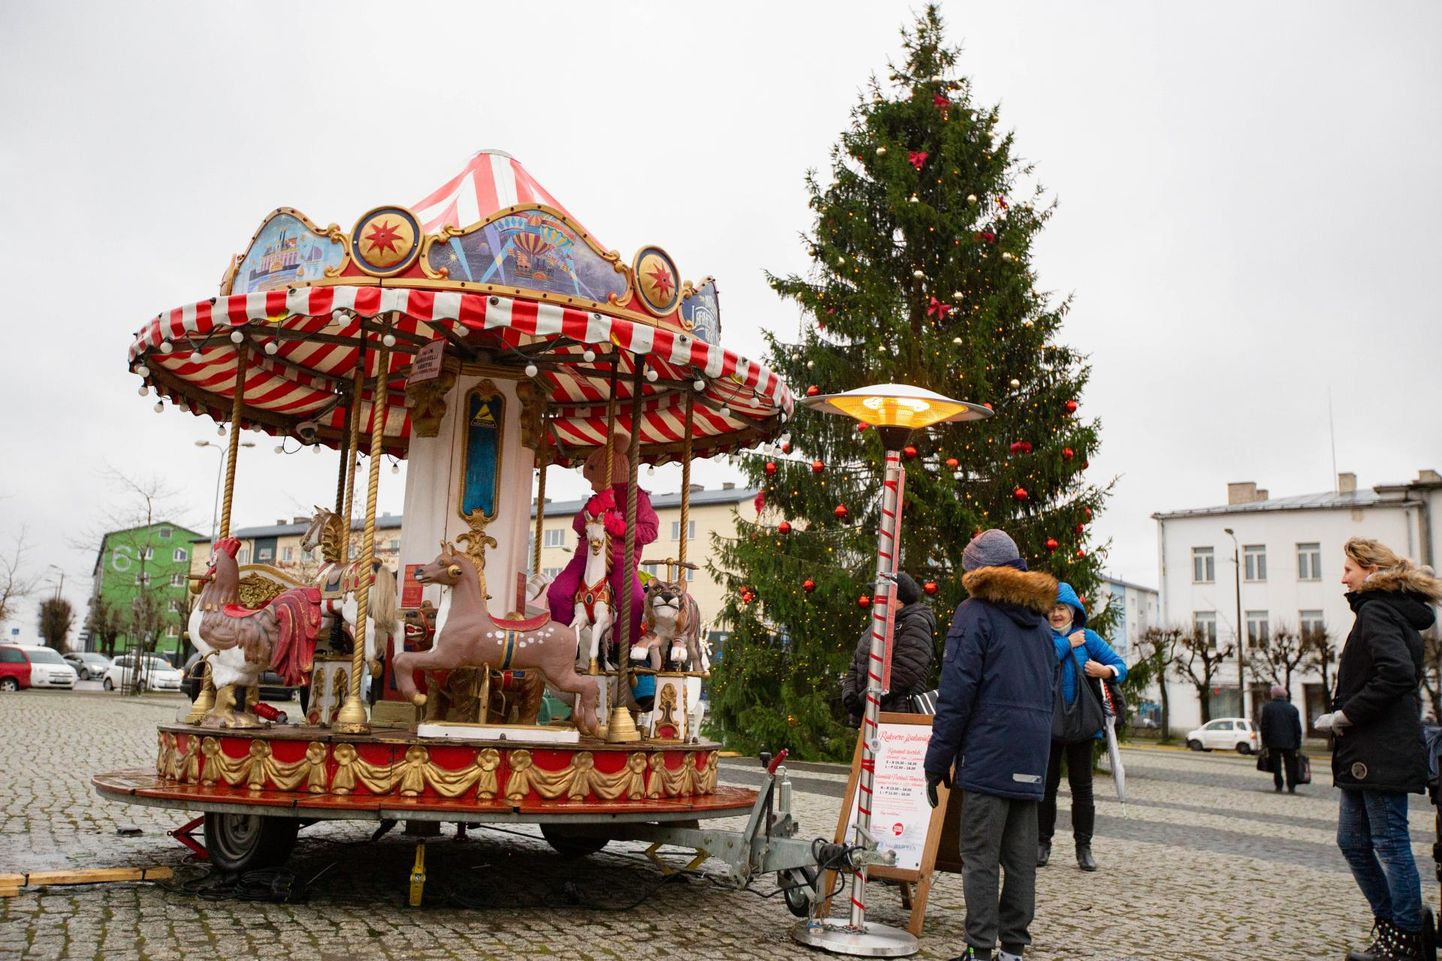 Eelmiste jõulude ajal tiirles Rakvere Keskväljakul laste rõõmuks väike karussell.